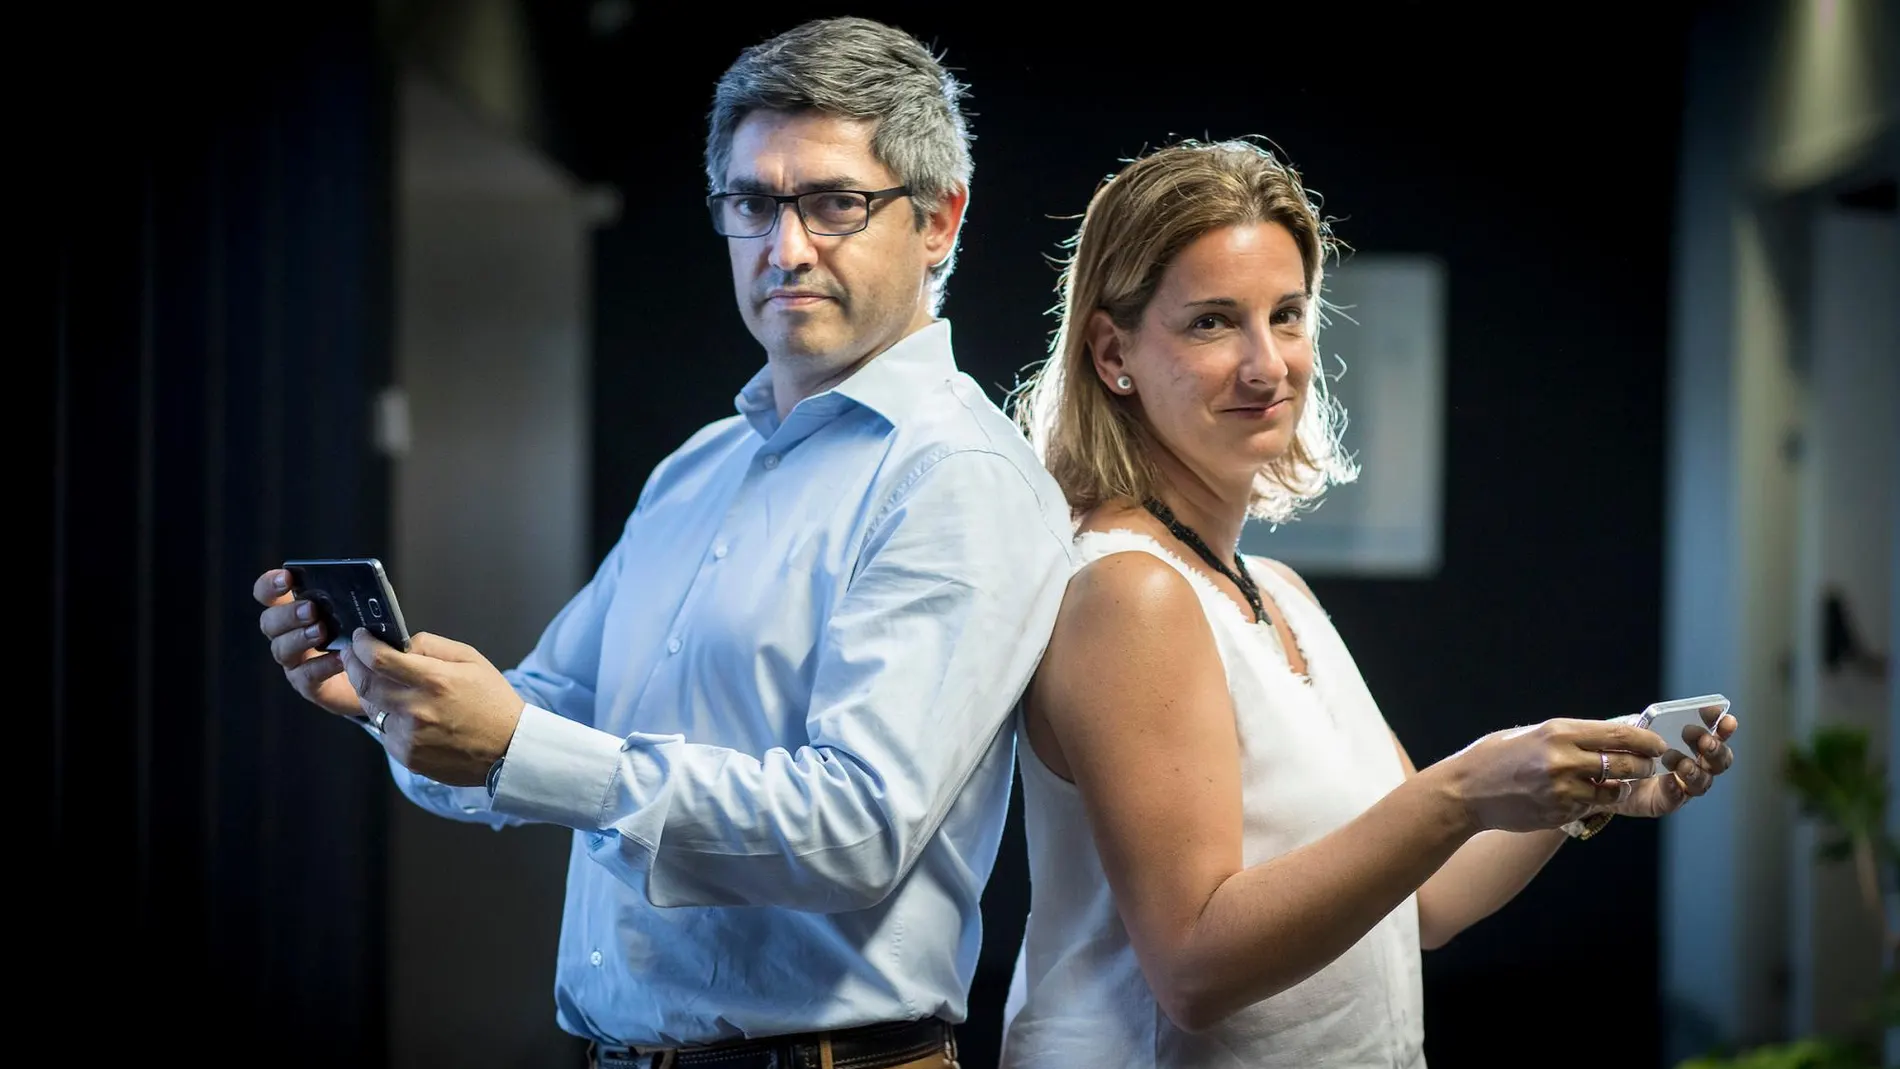 Los profesores de la CEU UCH Gonzalo Haro y Mabel Marí, codirectores del estudio sobre adicción a los videojuegos e inadaptación escolar